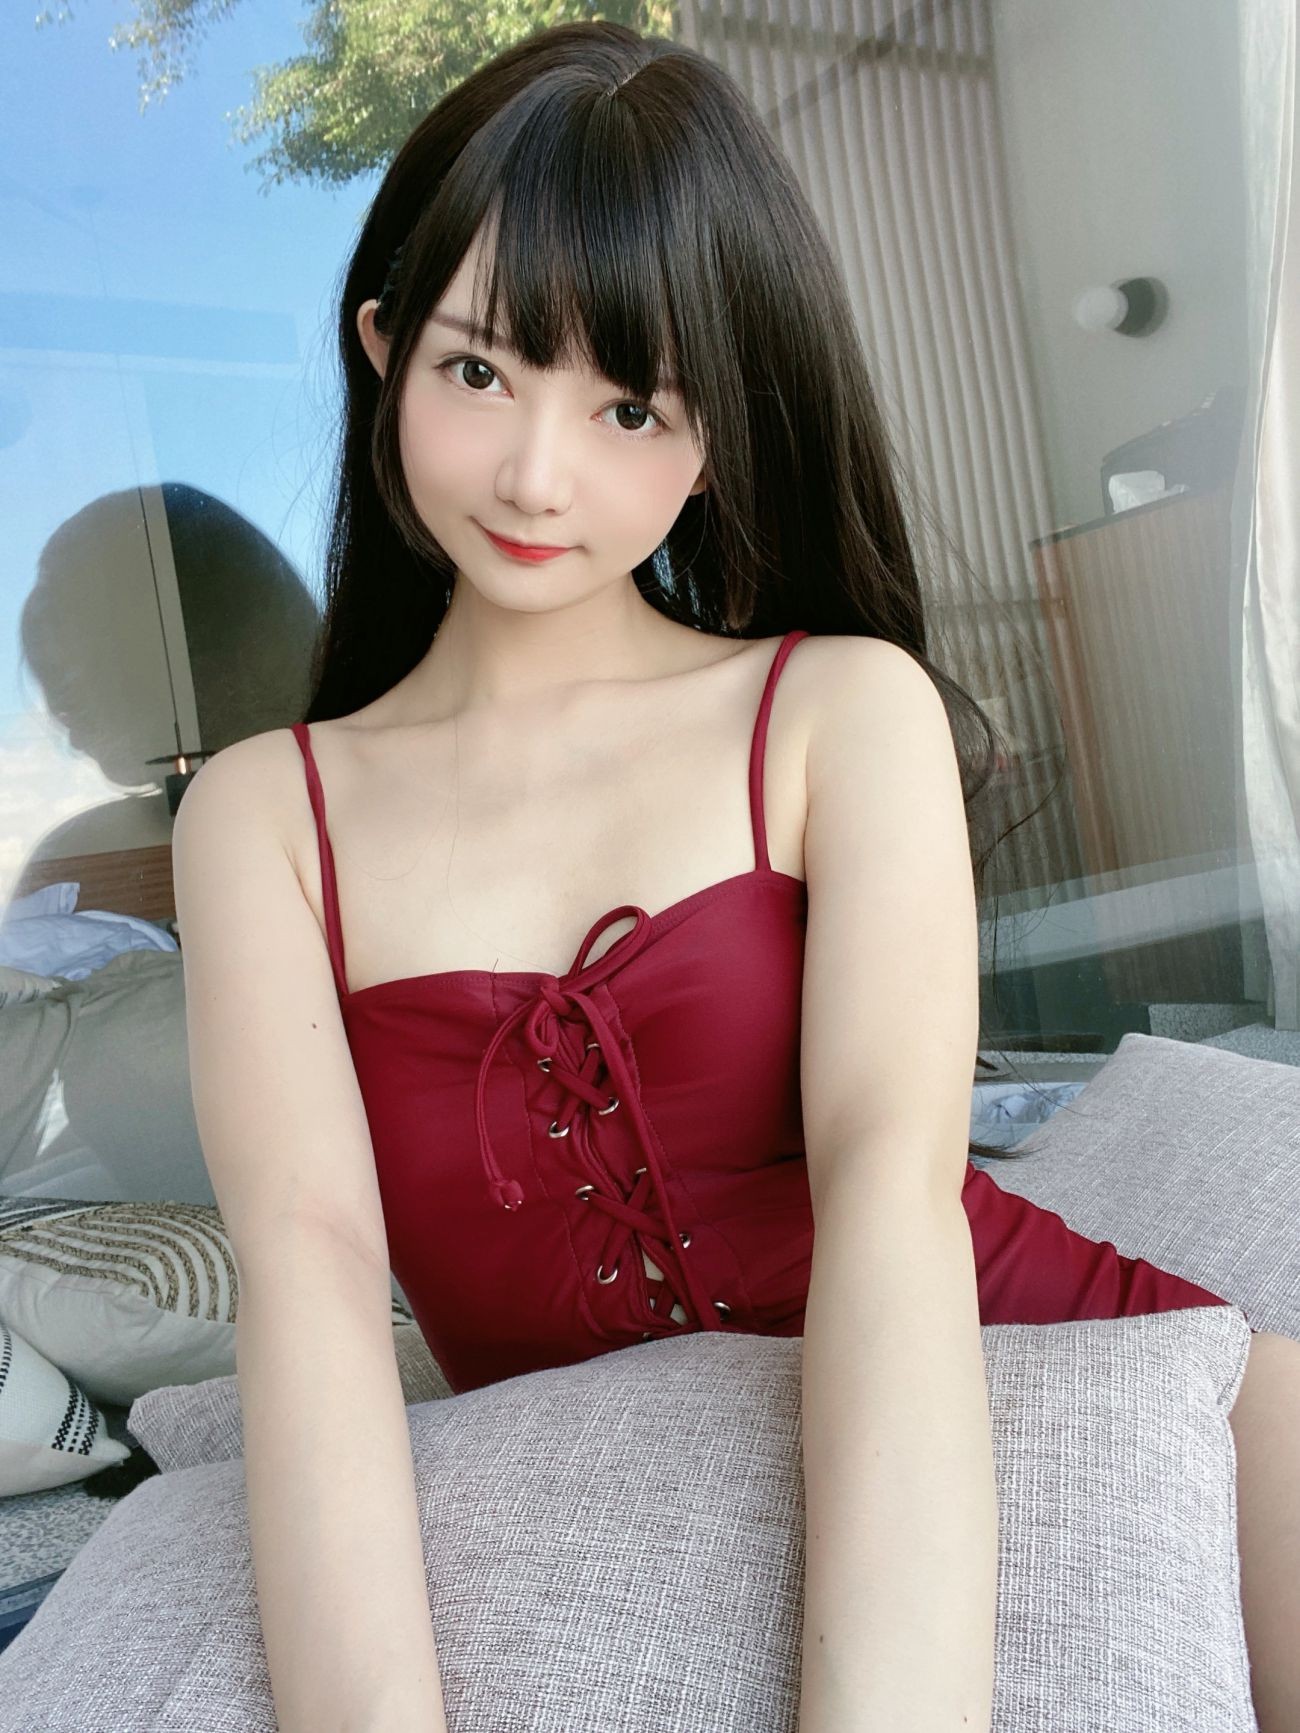 微博美少女51酱性感写真黑红泳装 (48)